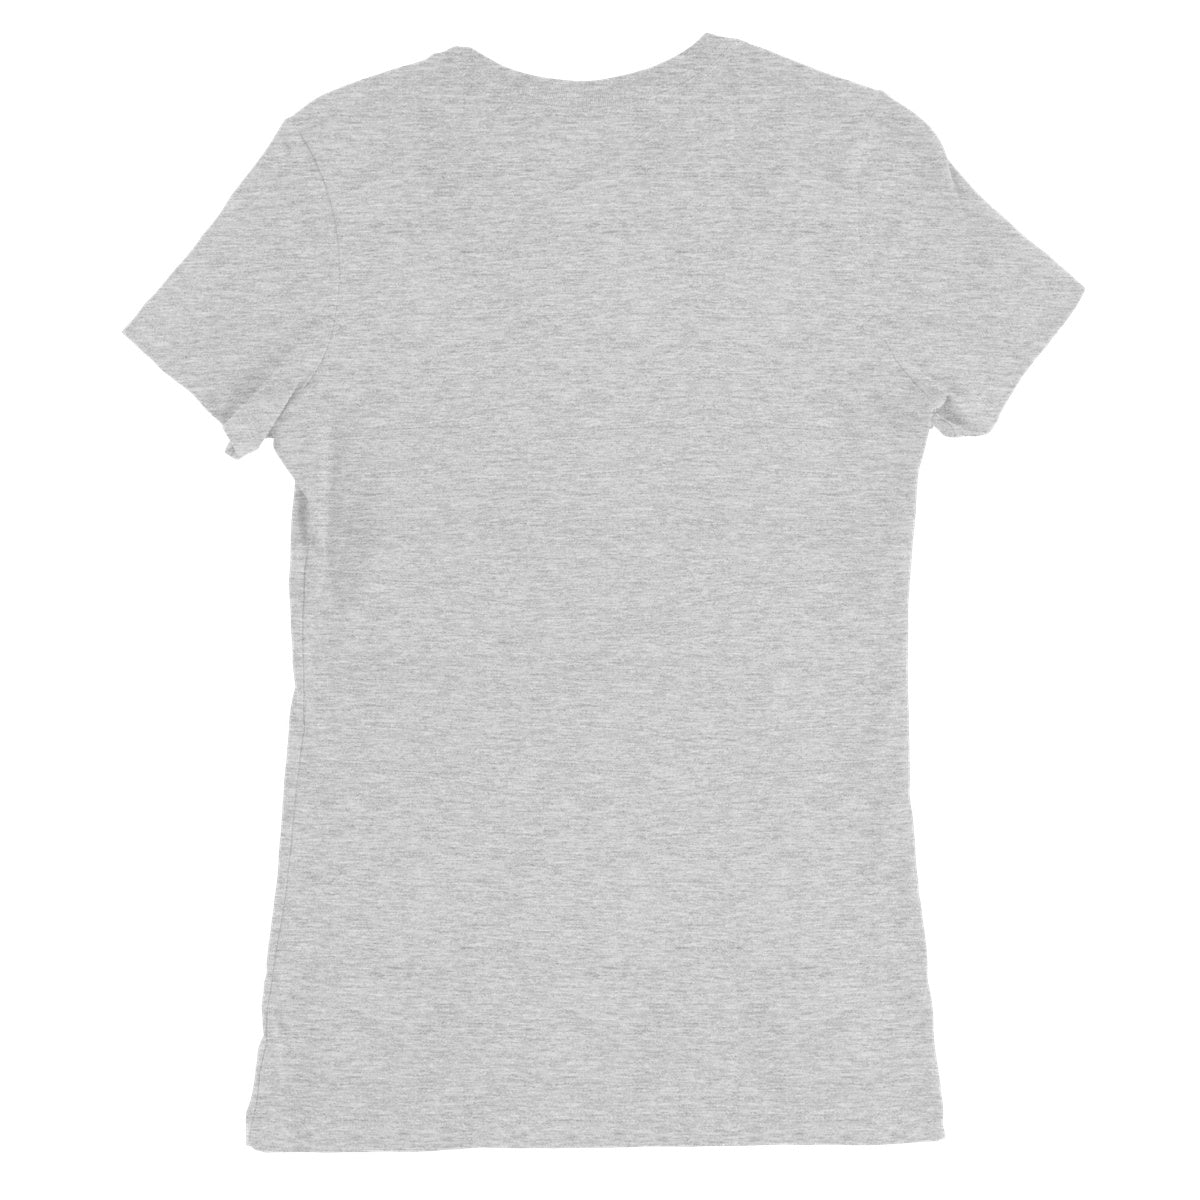 Evergreen Women's Favourite T-Shirt